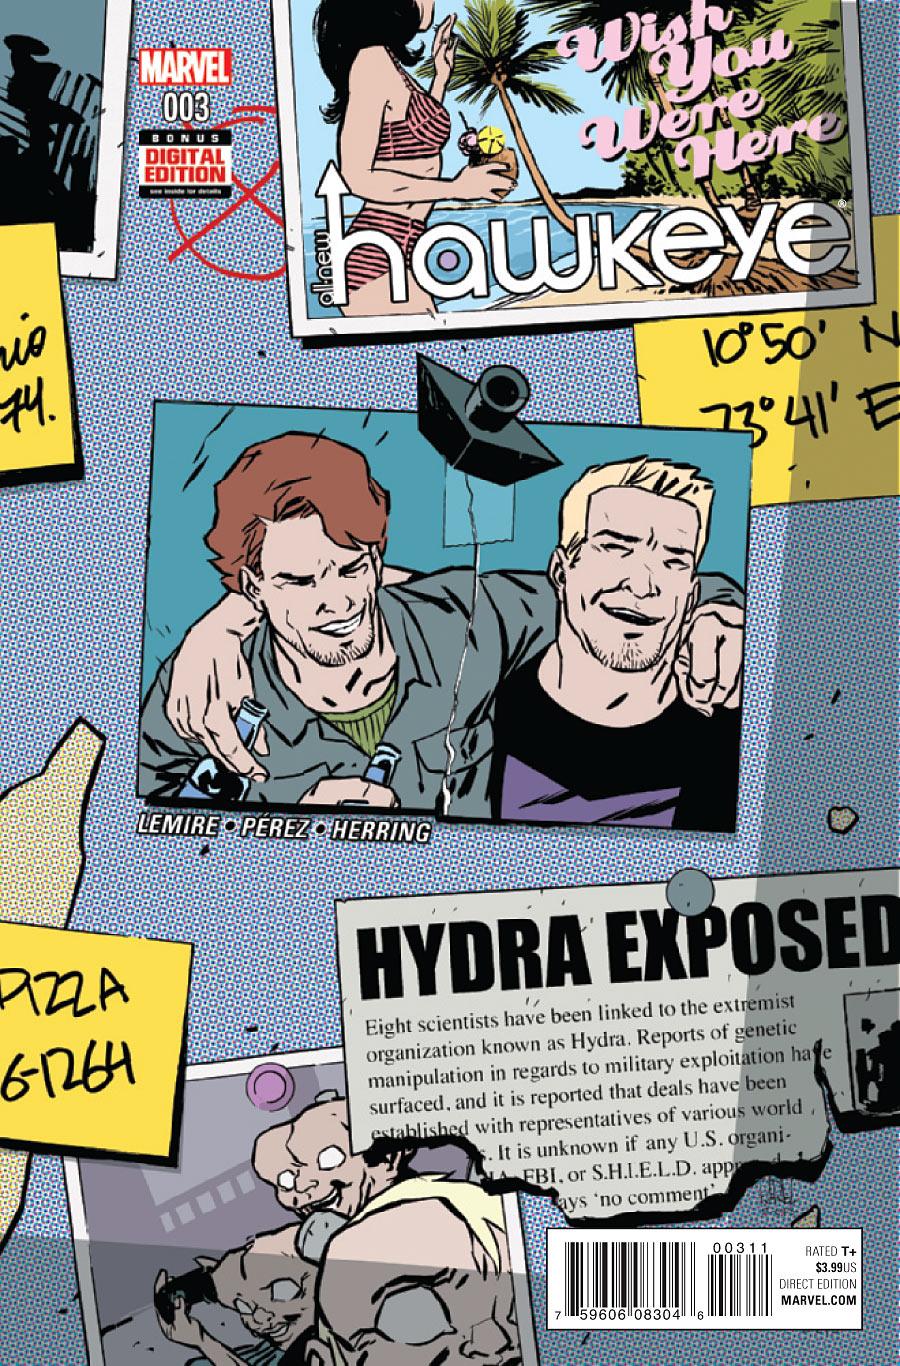 All-New Hawkeye Vol. 2 #3